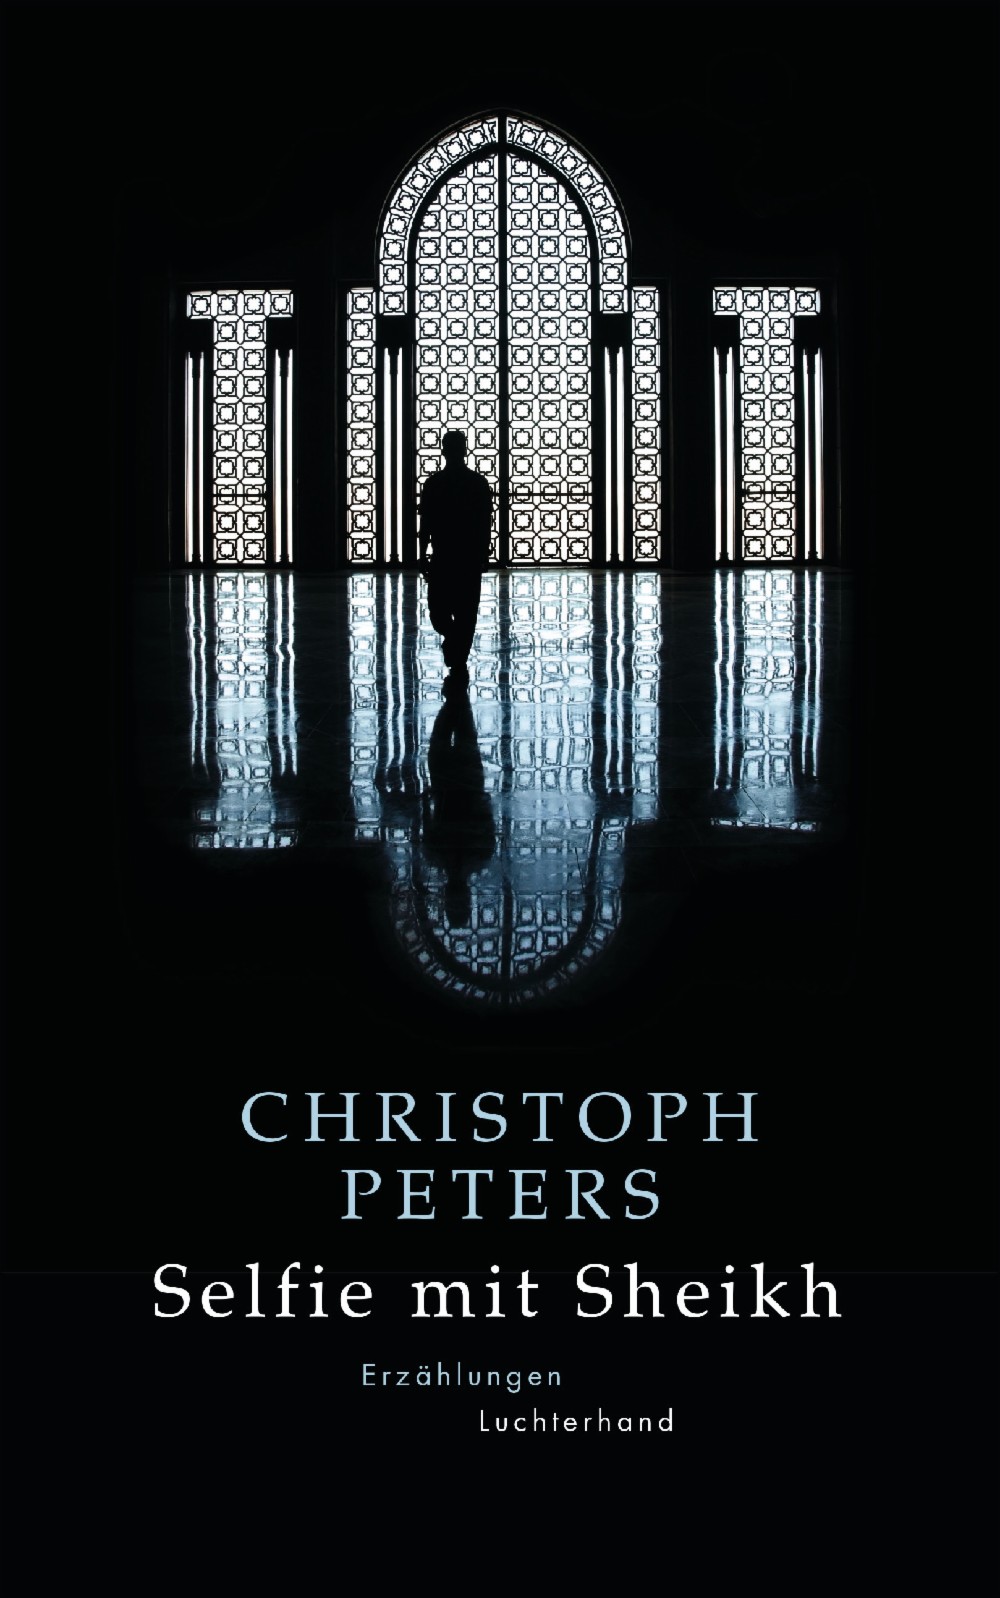 الغلاف الألماني لكتاب "سيلفي مع الشيخ" للمؤلف الألماني كريستوف بيترز.